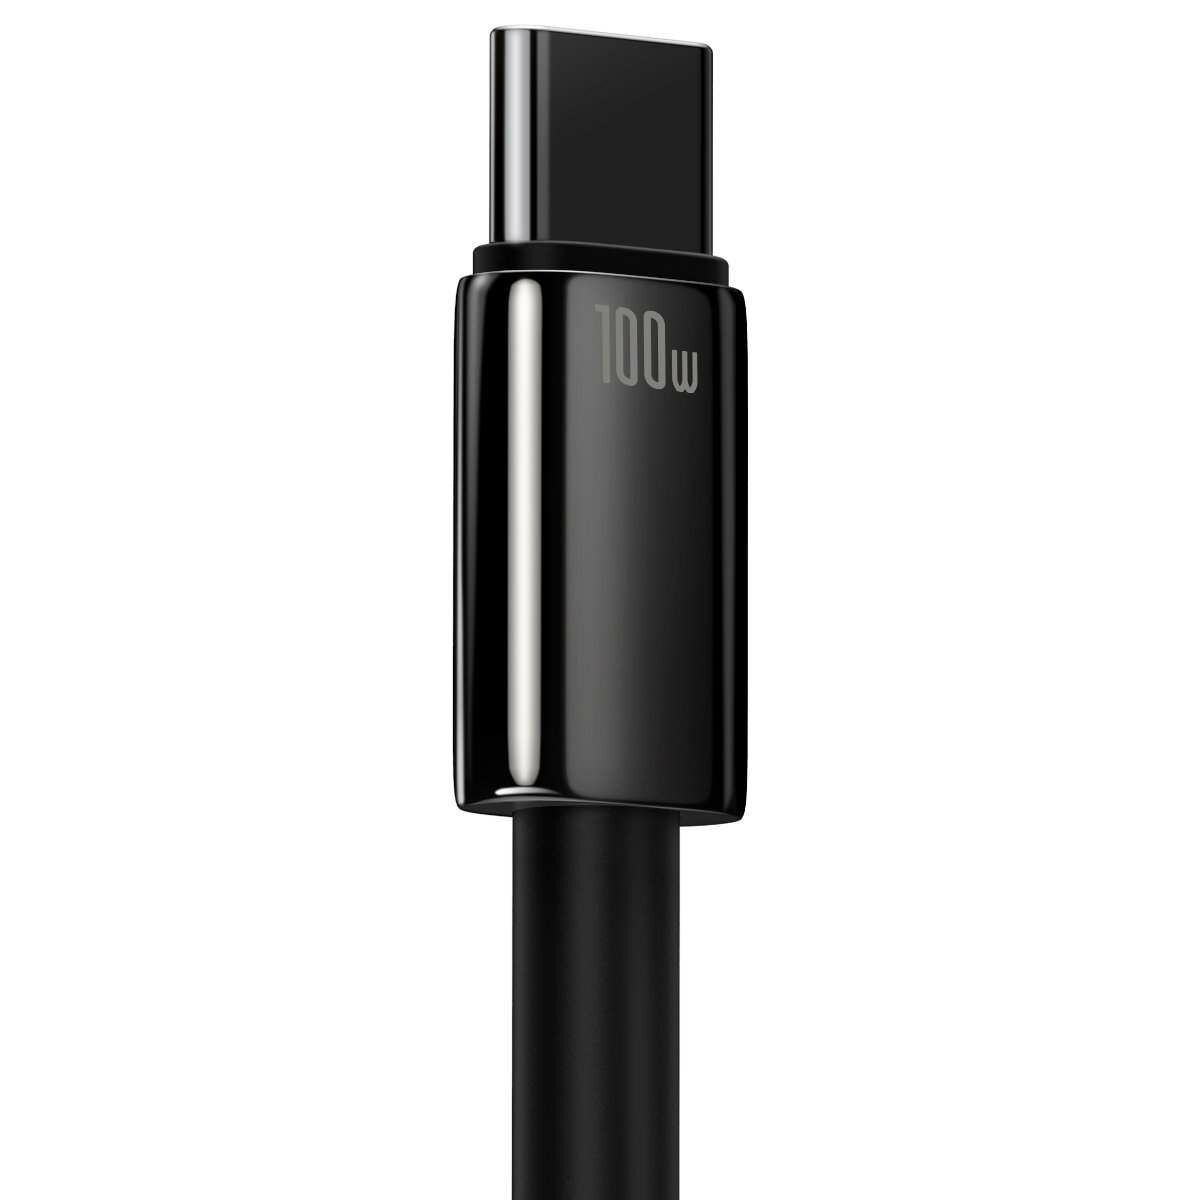 Kép 5/7 - Baseus Tungsten Gold Series USB - USB-C töltőkábel, 480Mb/s, 100W, 1m, fekete (CAWJ000001)